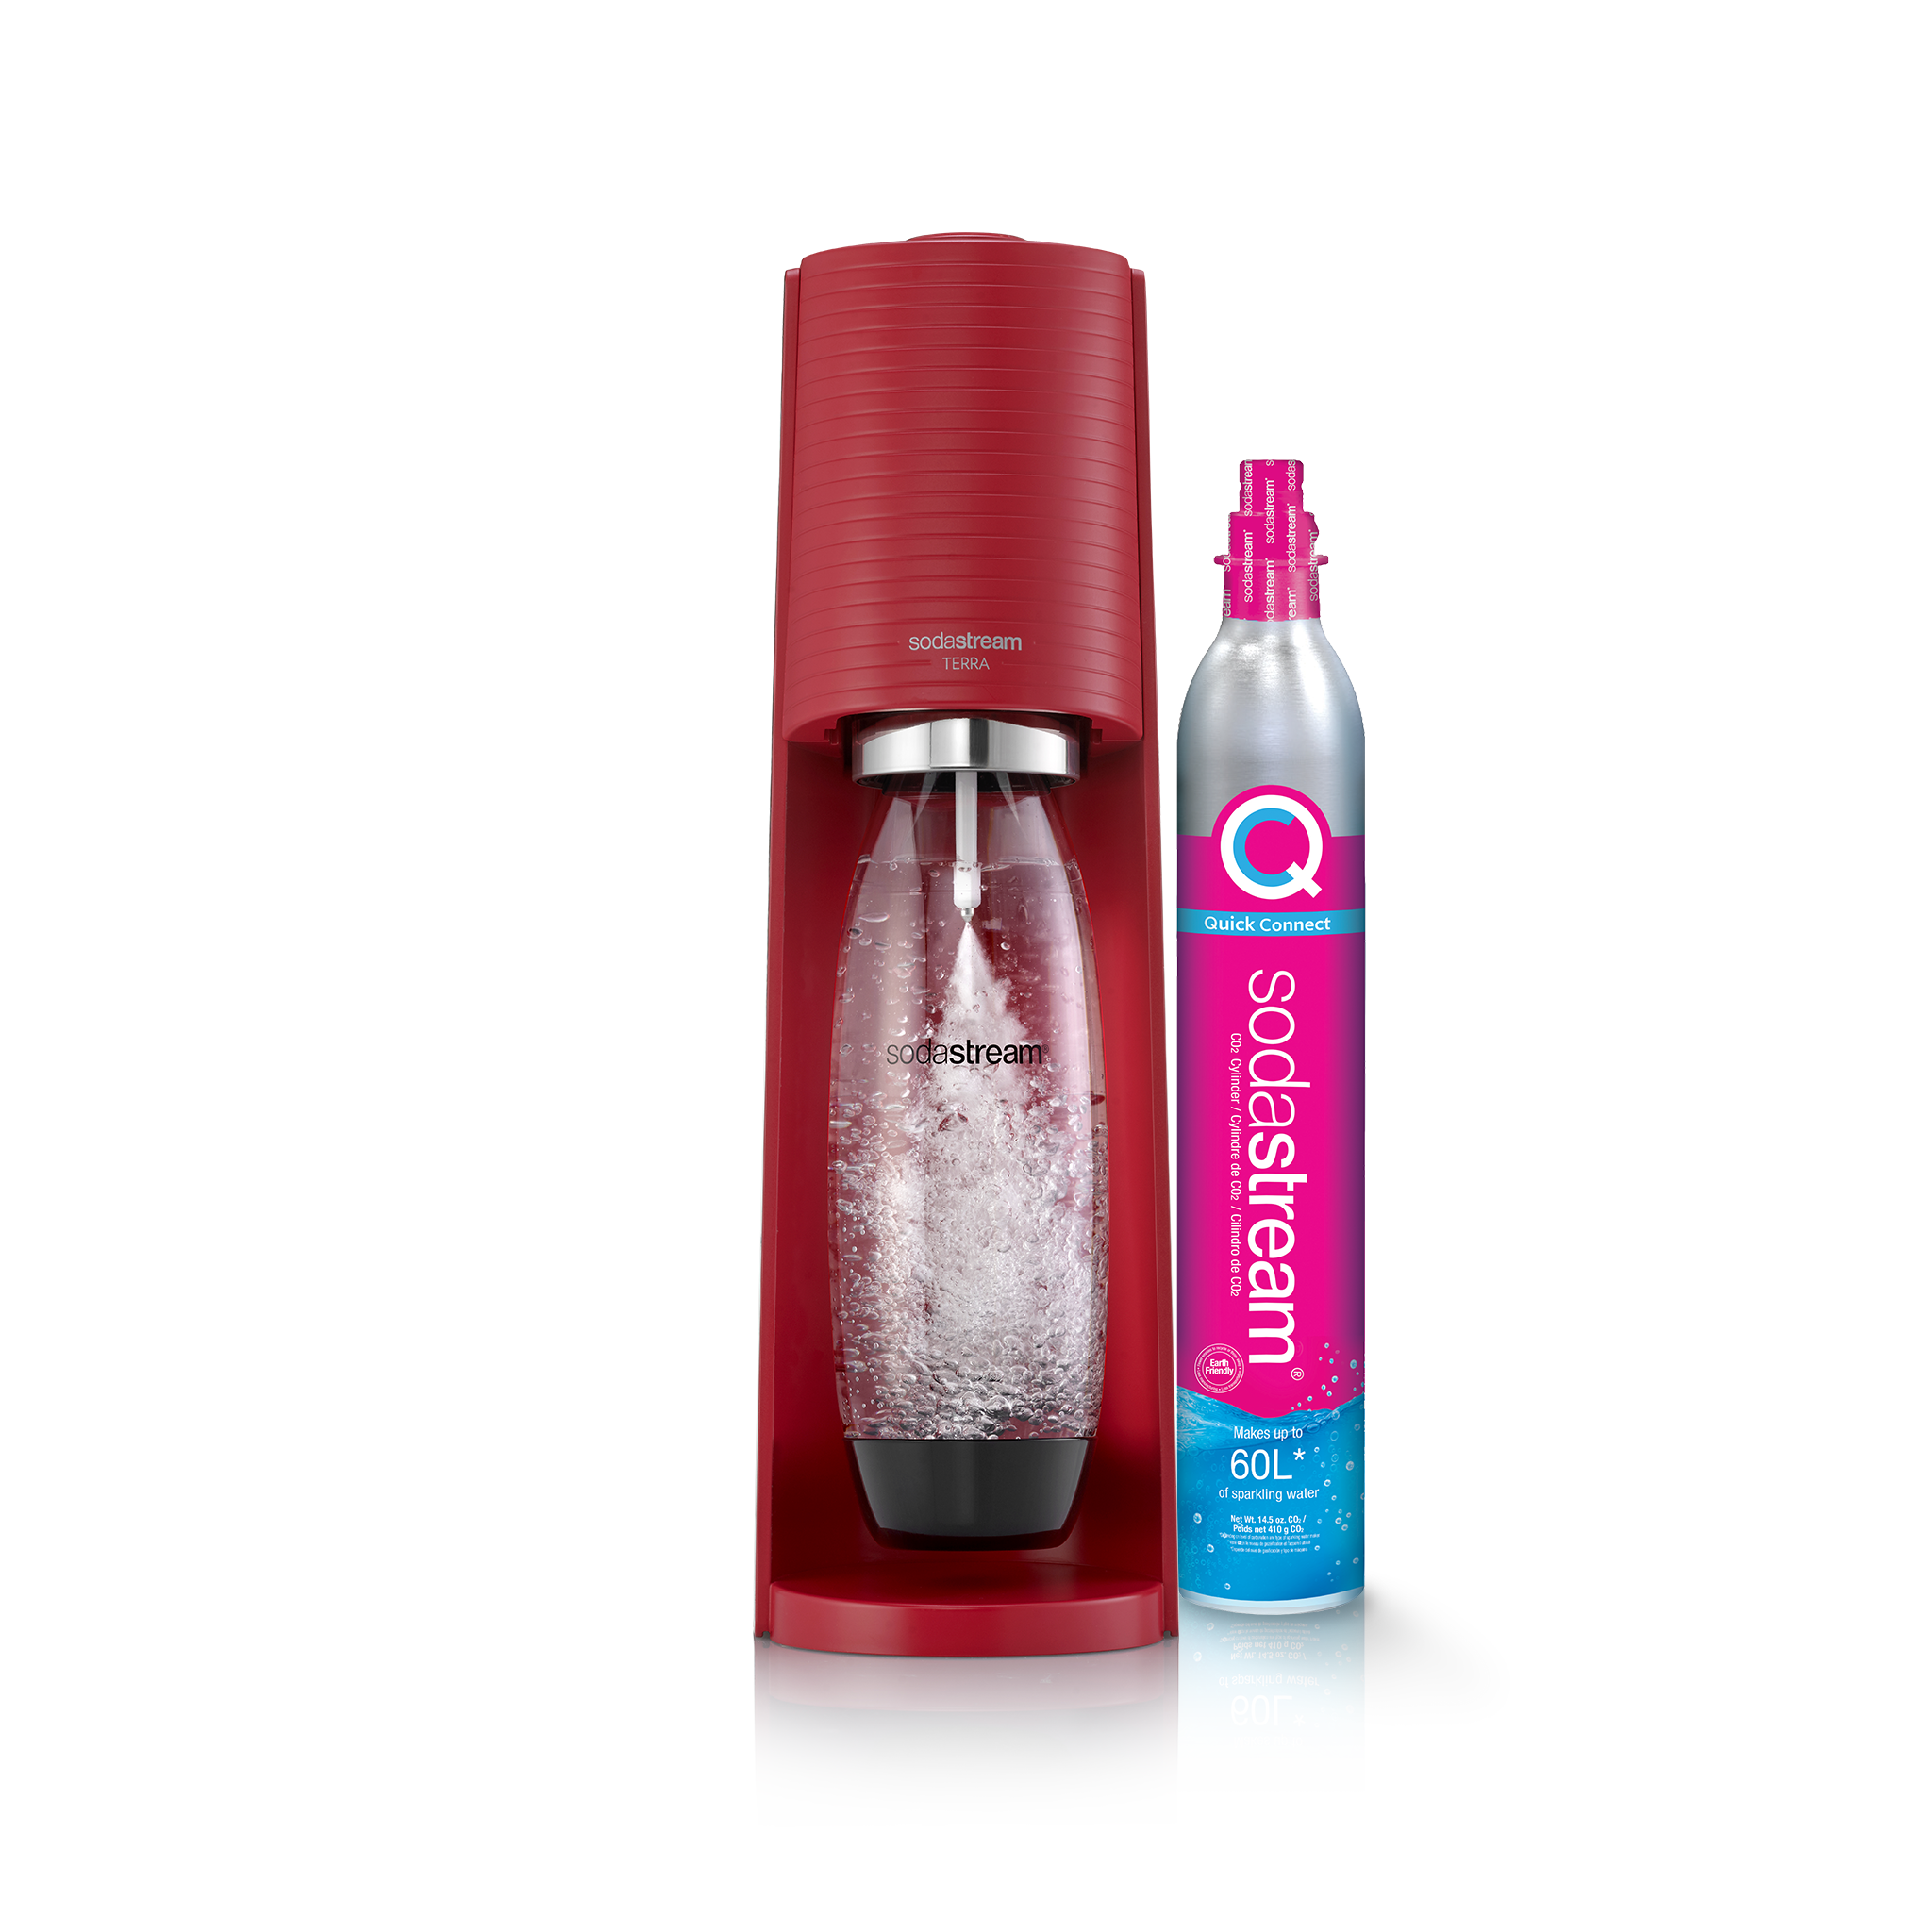 SodaStream Terra Classic Sparkling Water Maker with Bonus Bottles ~ NEW  White